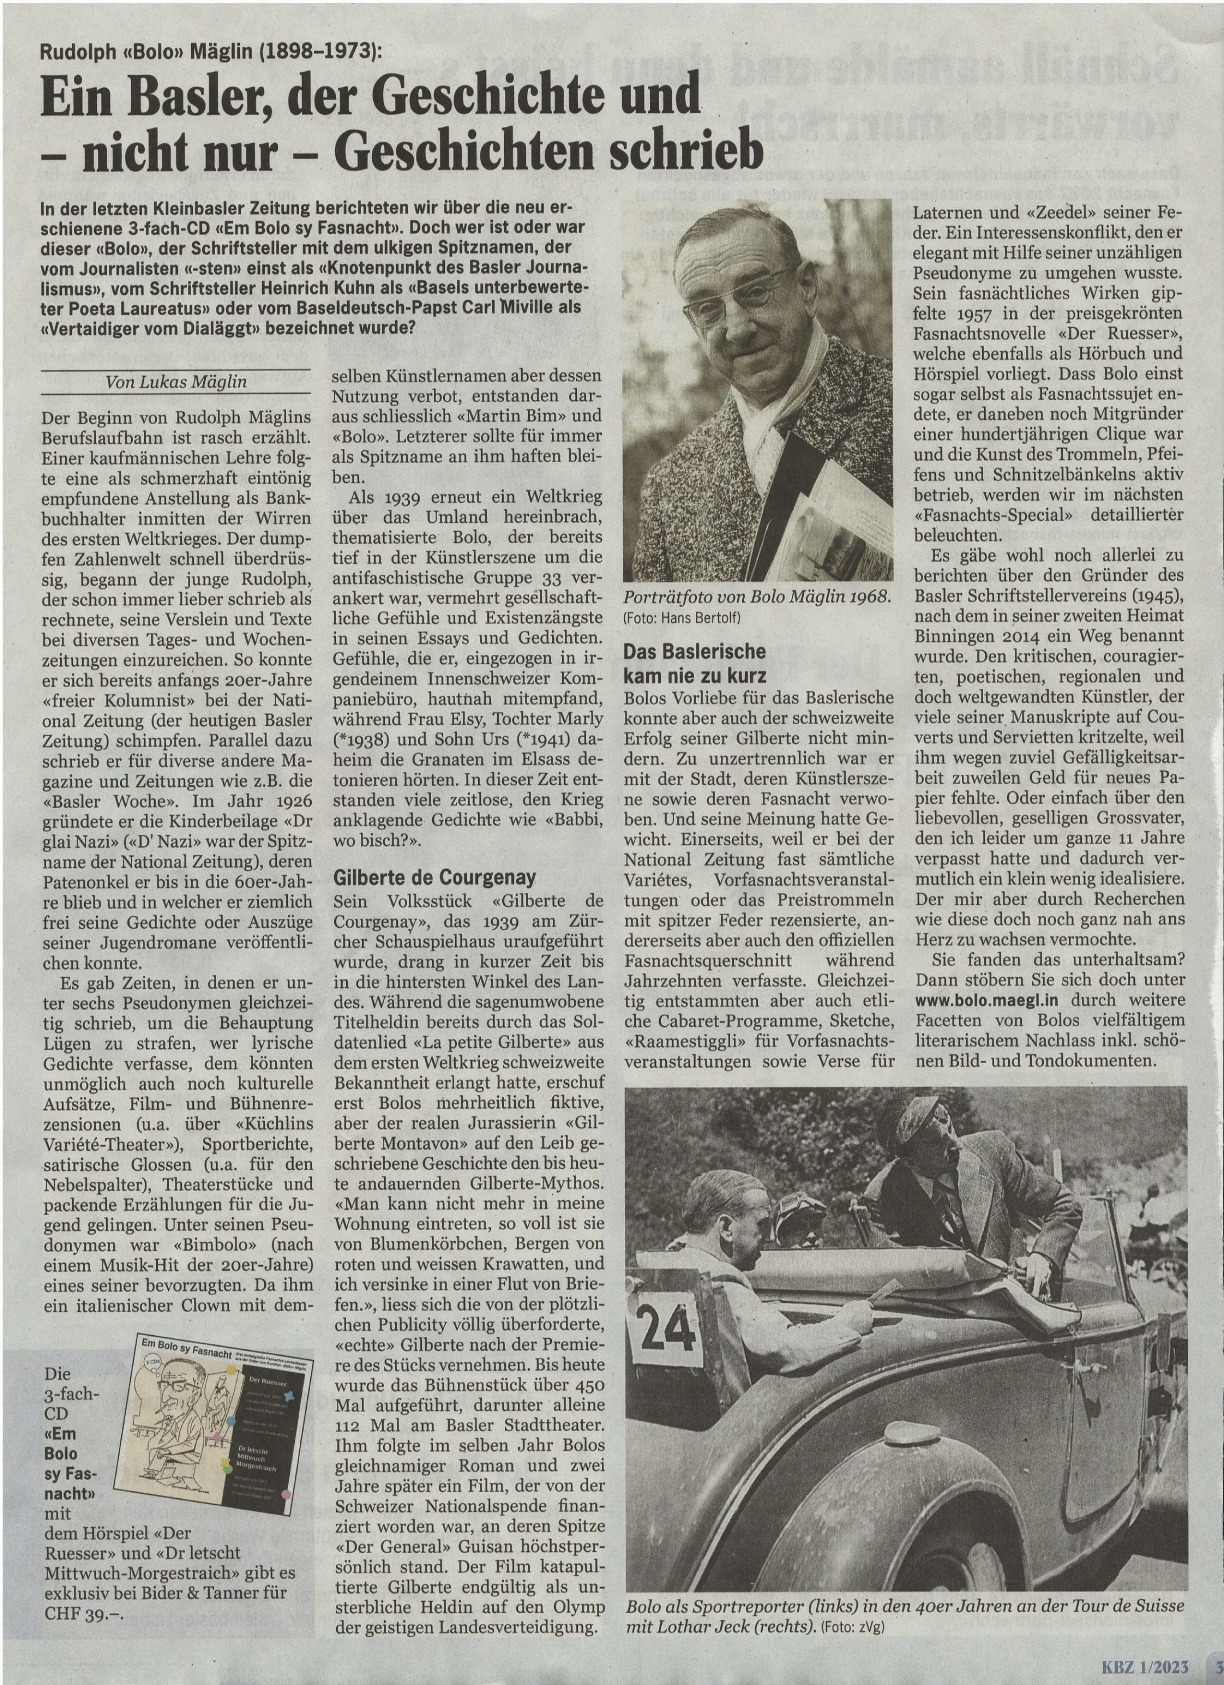 Bolo in der Kleinbaslerzeitung Nr. 1/12  23. Jan 2023, S. 32